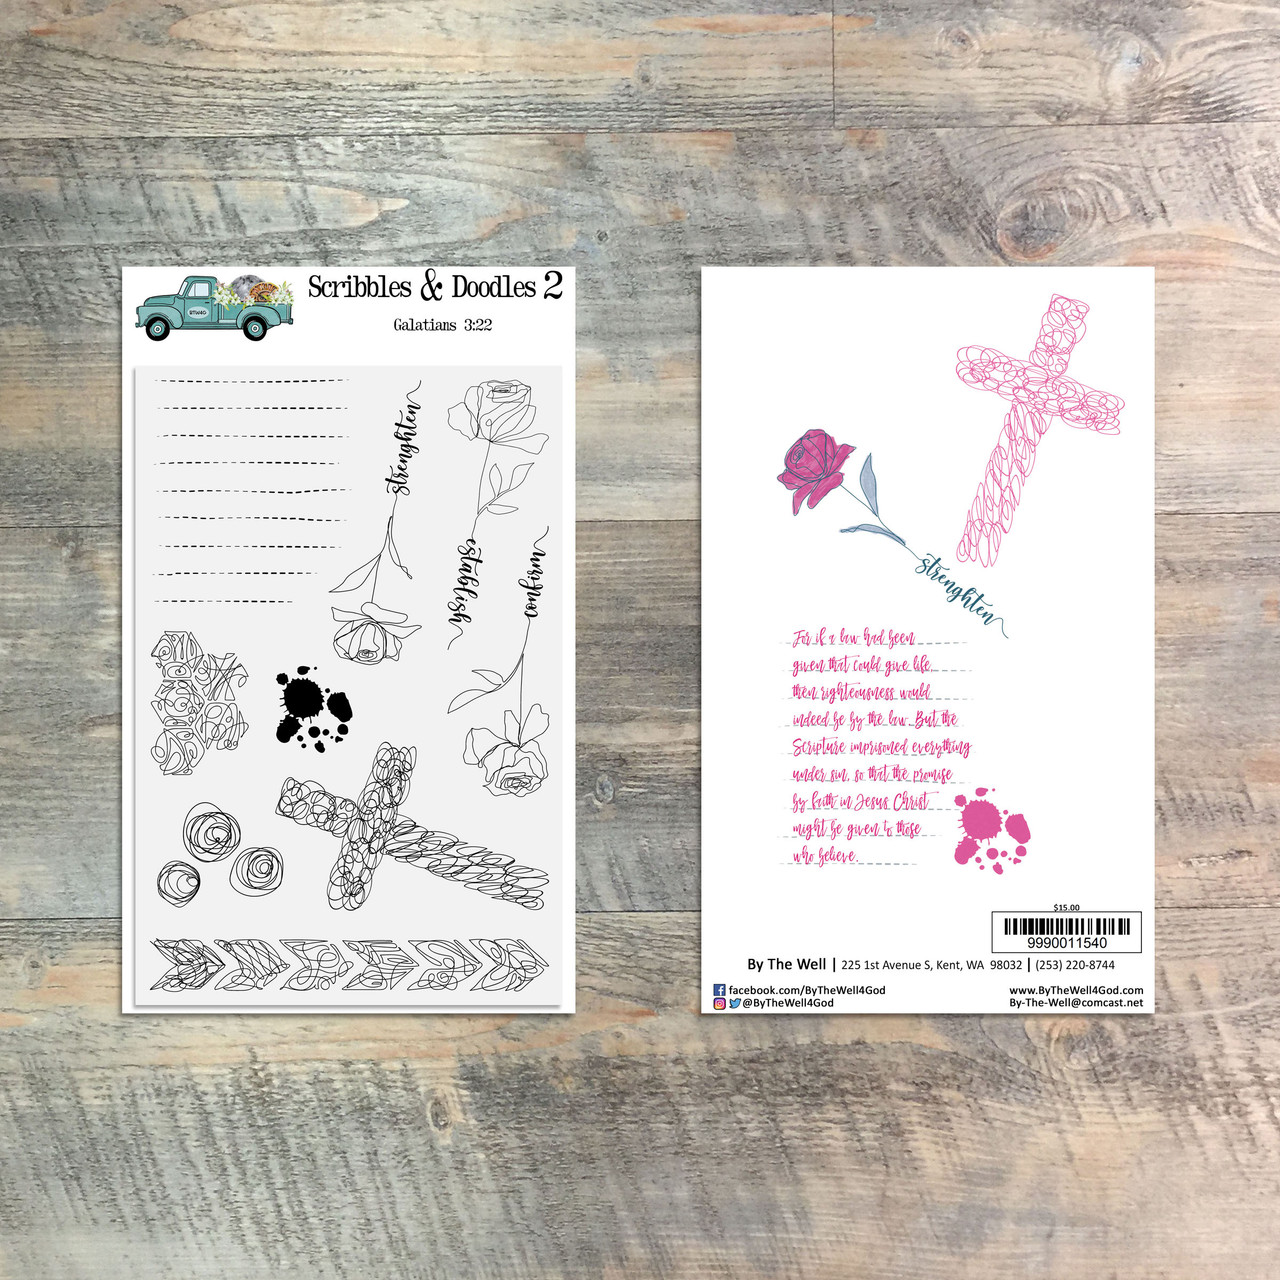 Scribbles & Doodles 2 - 9 Piece Stamp Set - ByTheWell4God